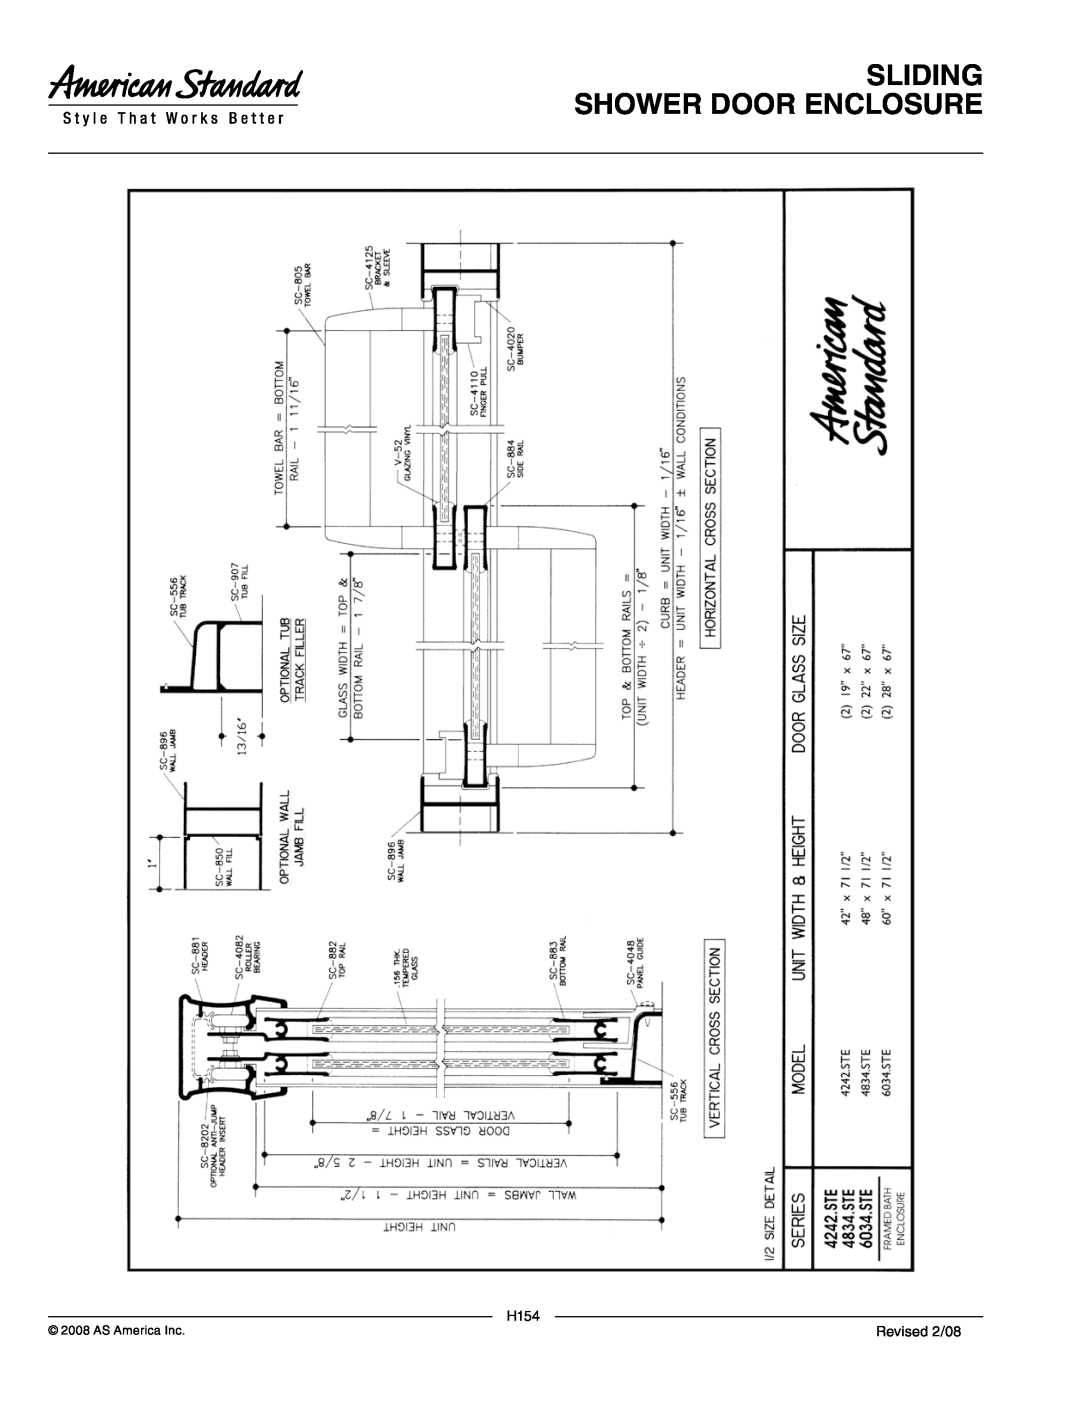 American Standard 4834.STE2, 6034.STE5, 6034.STE2 manual Sliding Shower Door Enclosure, H154, Revised 2/08, AS America Inc 